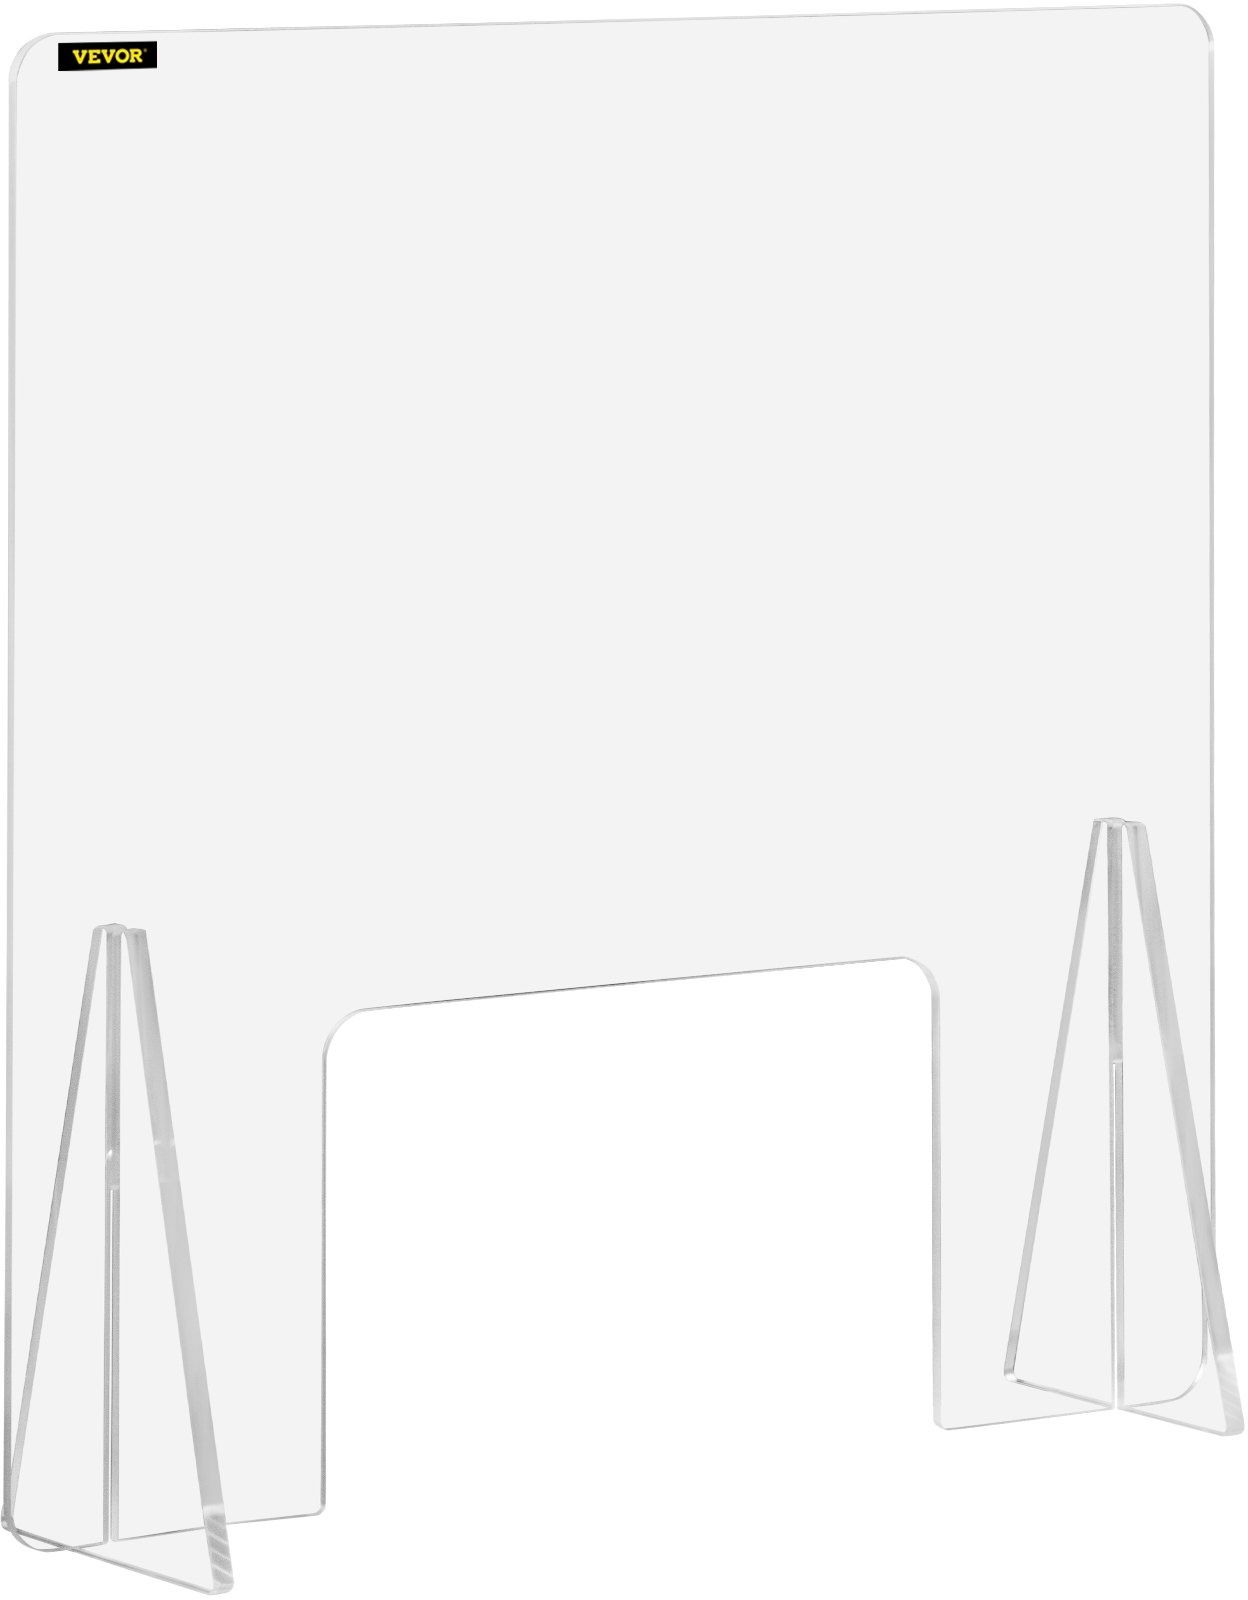 VEVOR Schreibtisch Trennwand Plexiglas, 60 x 60 cm Spuckschutz, Acrylglas Sichtschutz Thekenaufsatz Durchreiche Lärm reduzieren physische Trennung Banken Kliniken Schulen Büro